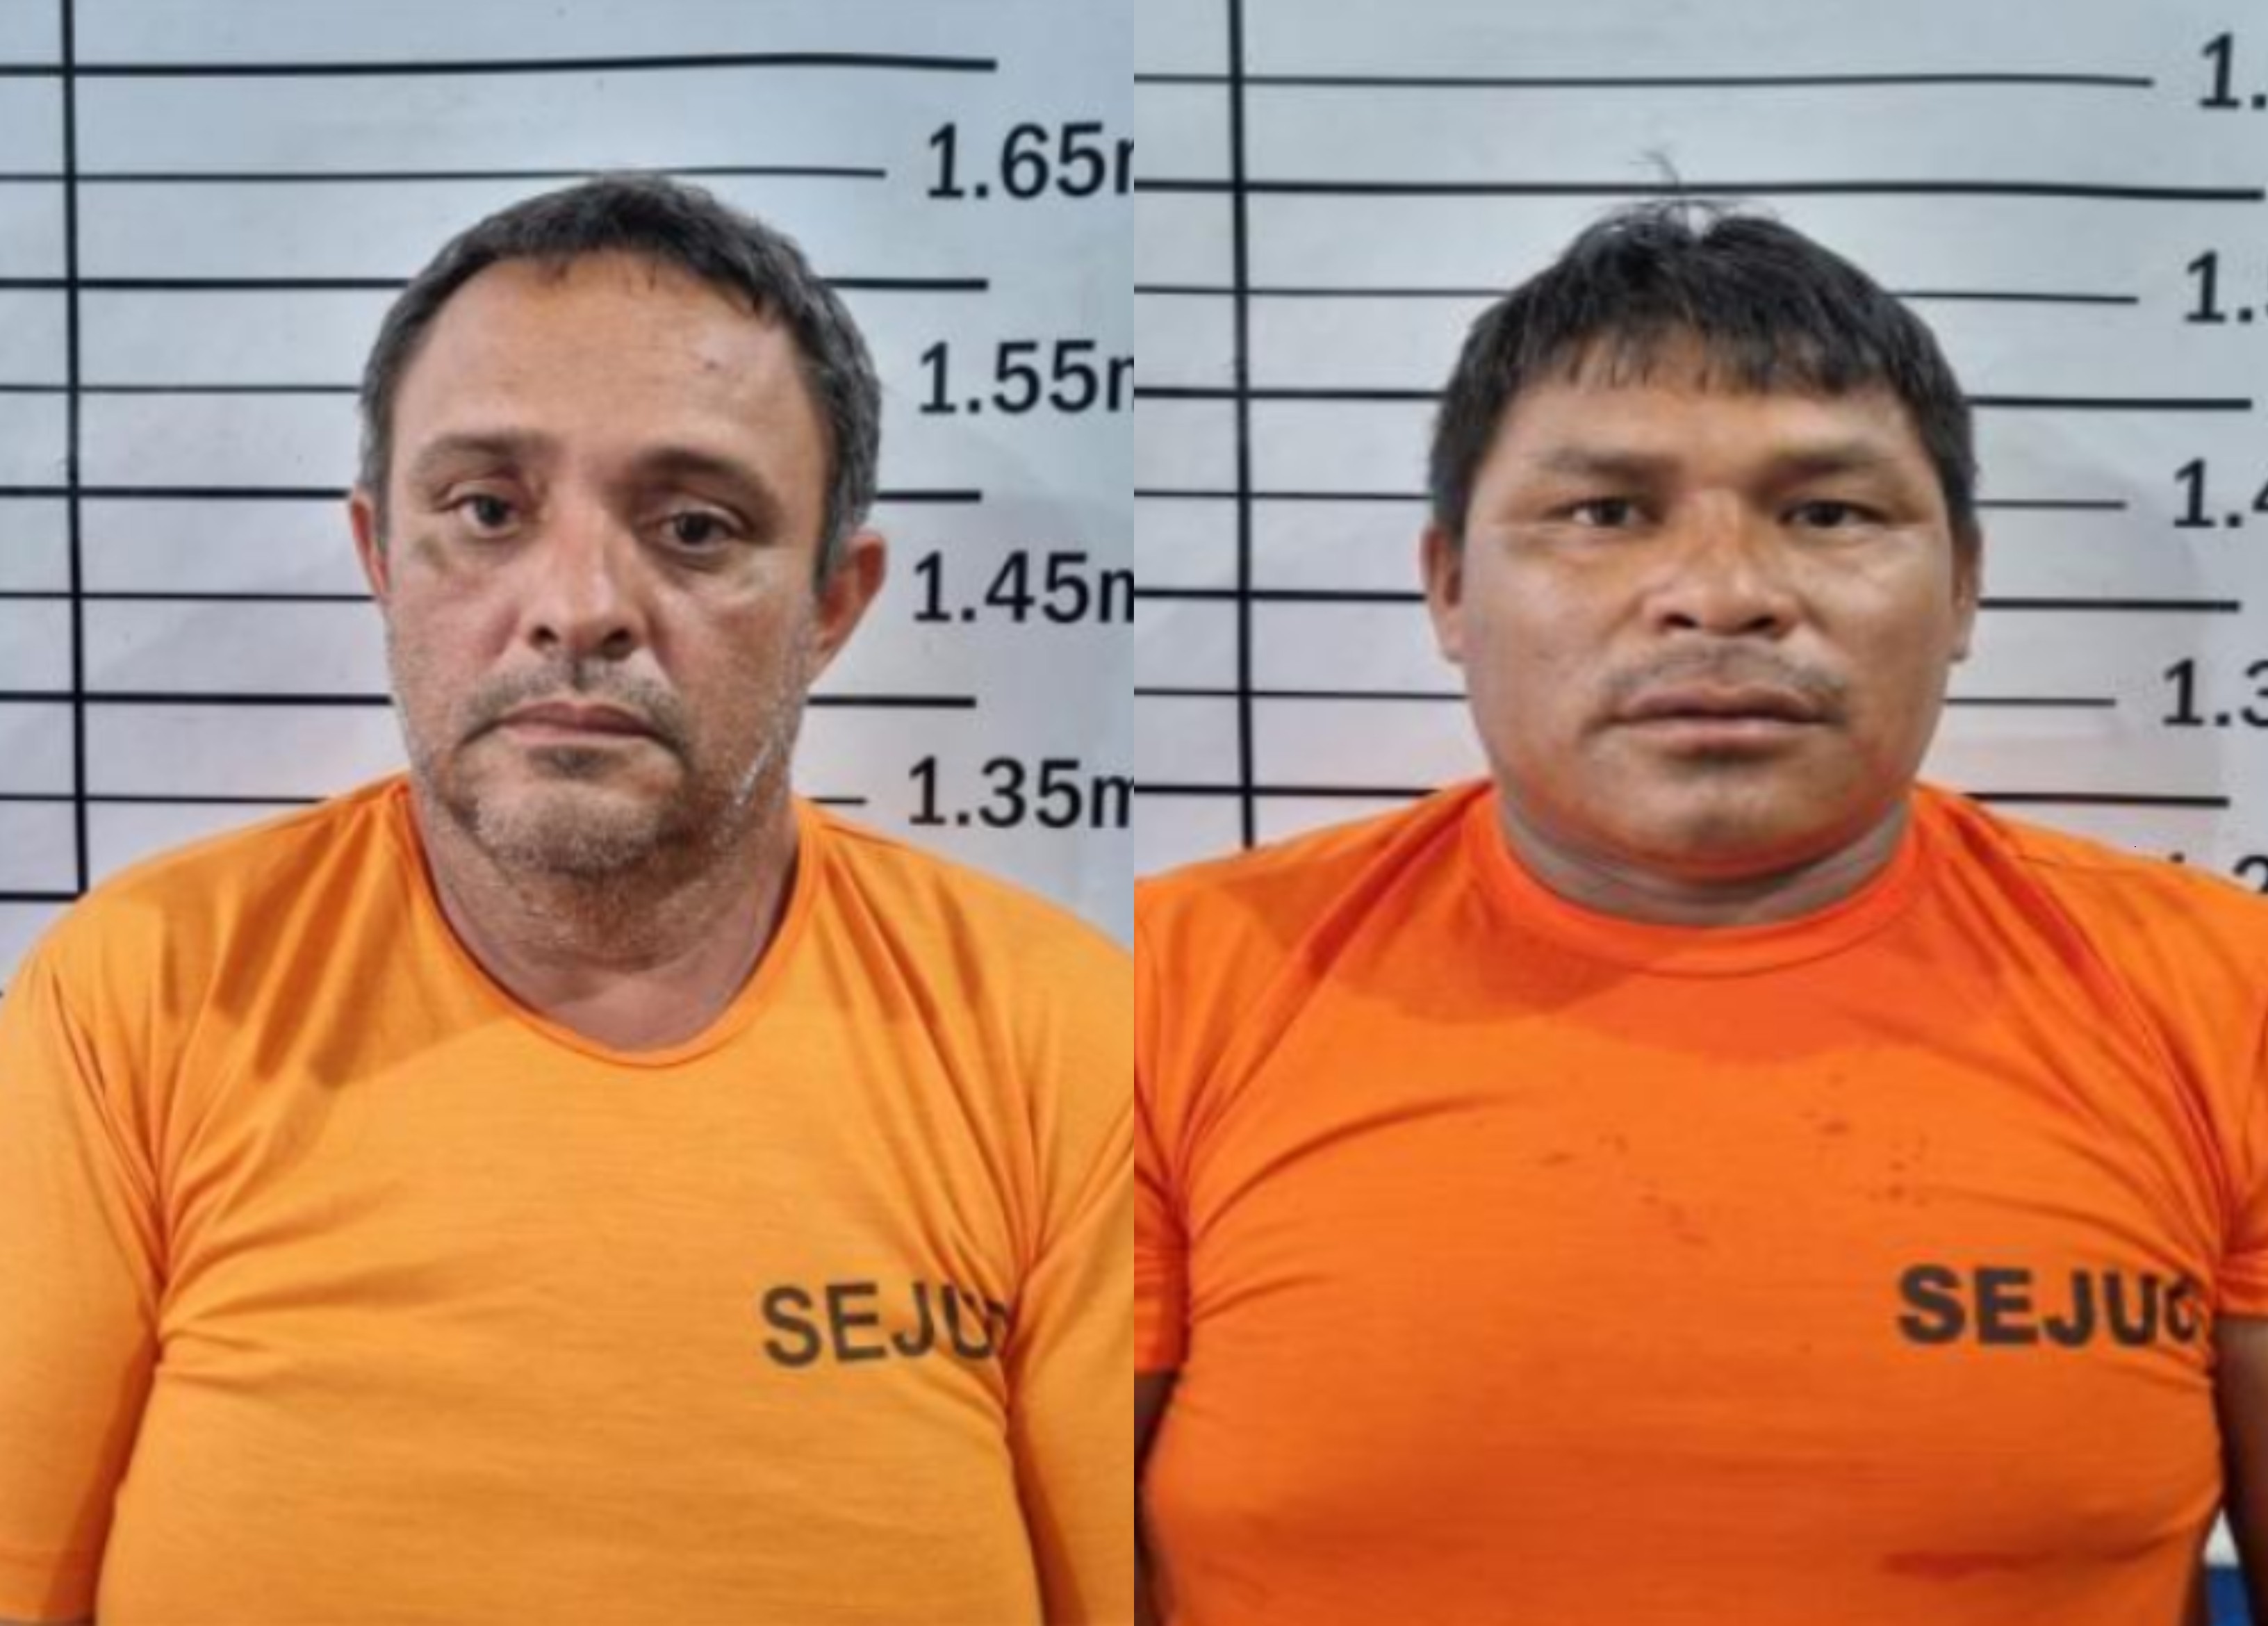 Justiça nega pedido de liberdade a presos suspeitos de assassinar casal em disputa por terras em RR